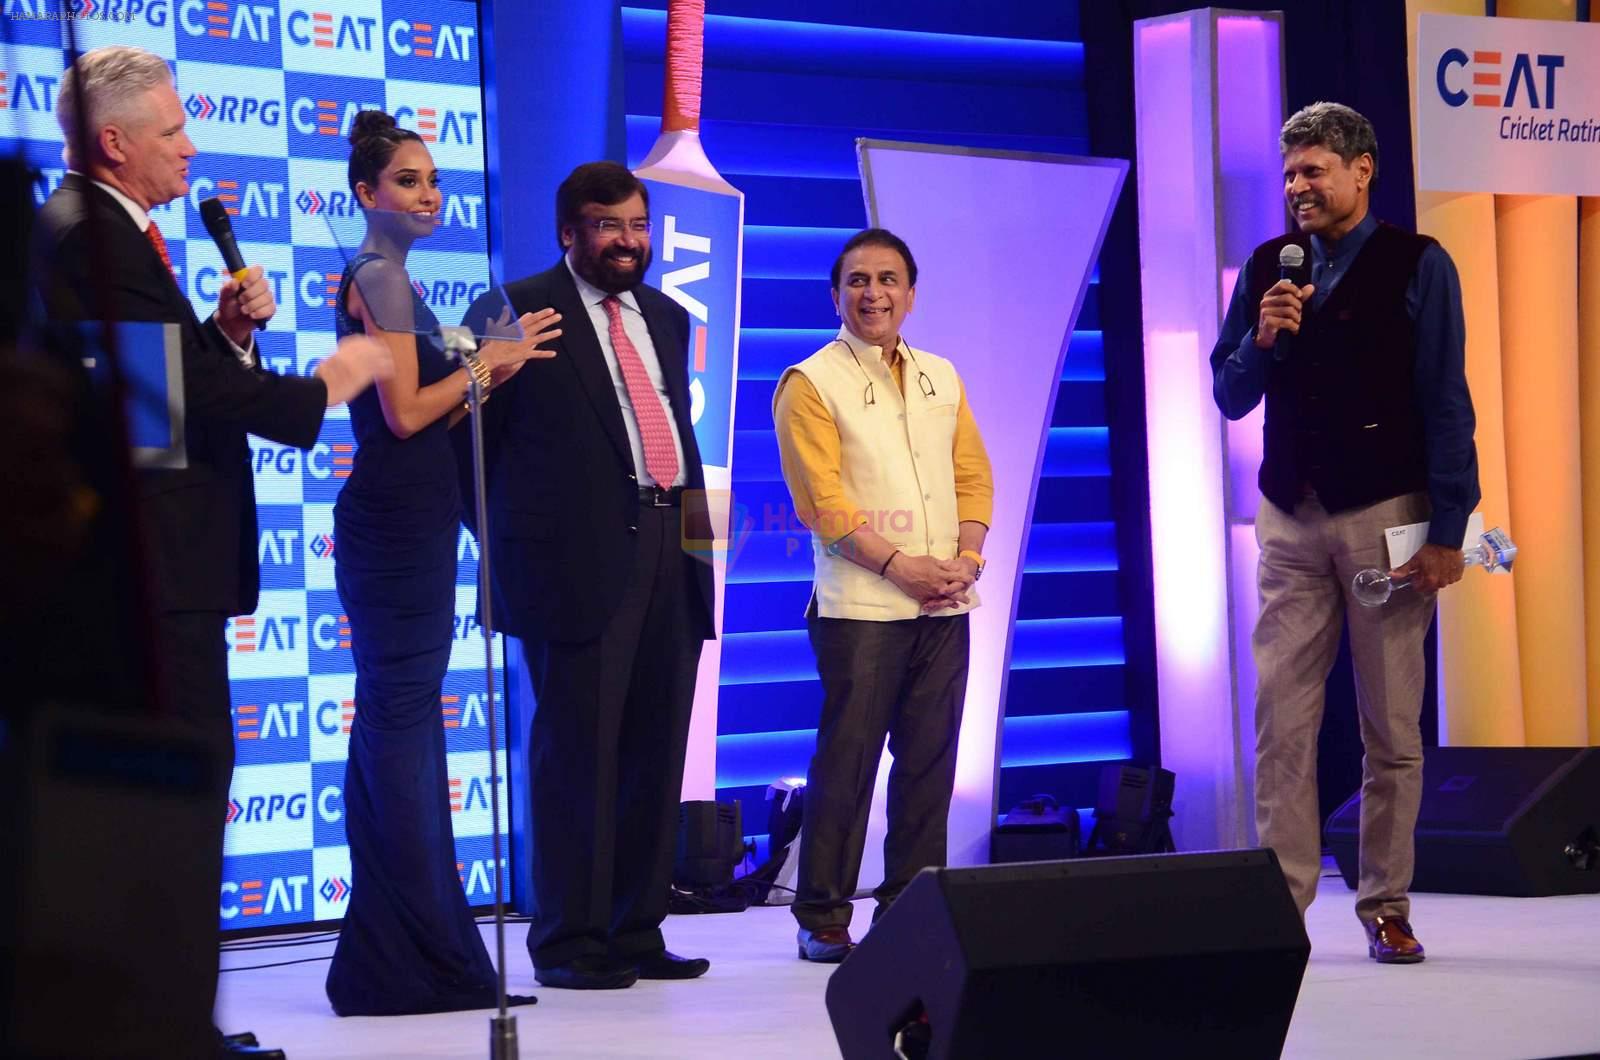 Lisa Haydon, Sunil Gavaskar, Kapil Dev at Ceat Cricket Awards in Trident, Mumbai on 25th May 2015